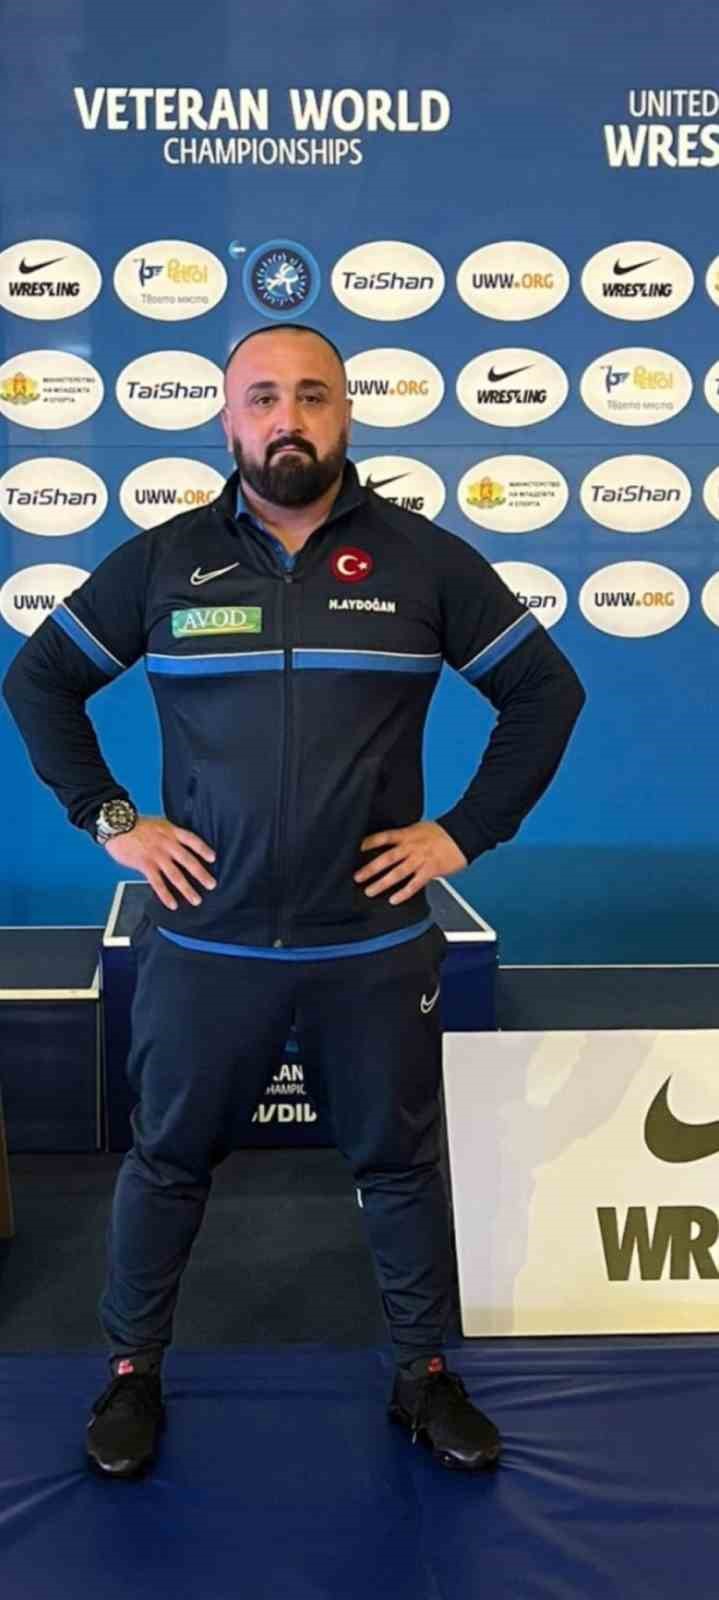 Afyon’lu milli güreşçi Aydoğan Yunanistan’da yapılacak şampiyonaya hazırlanıyor